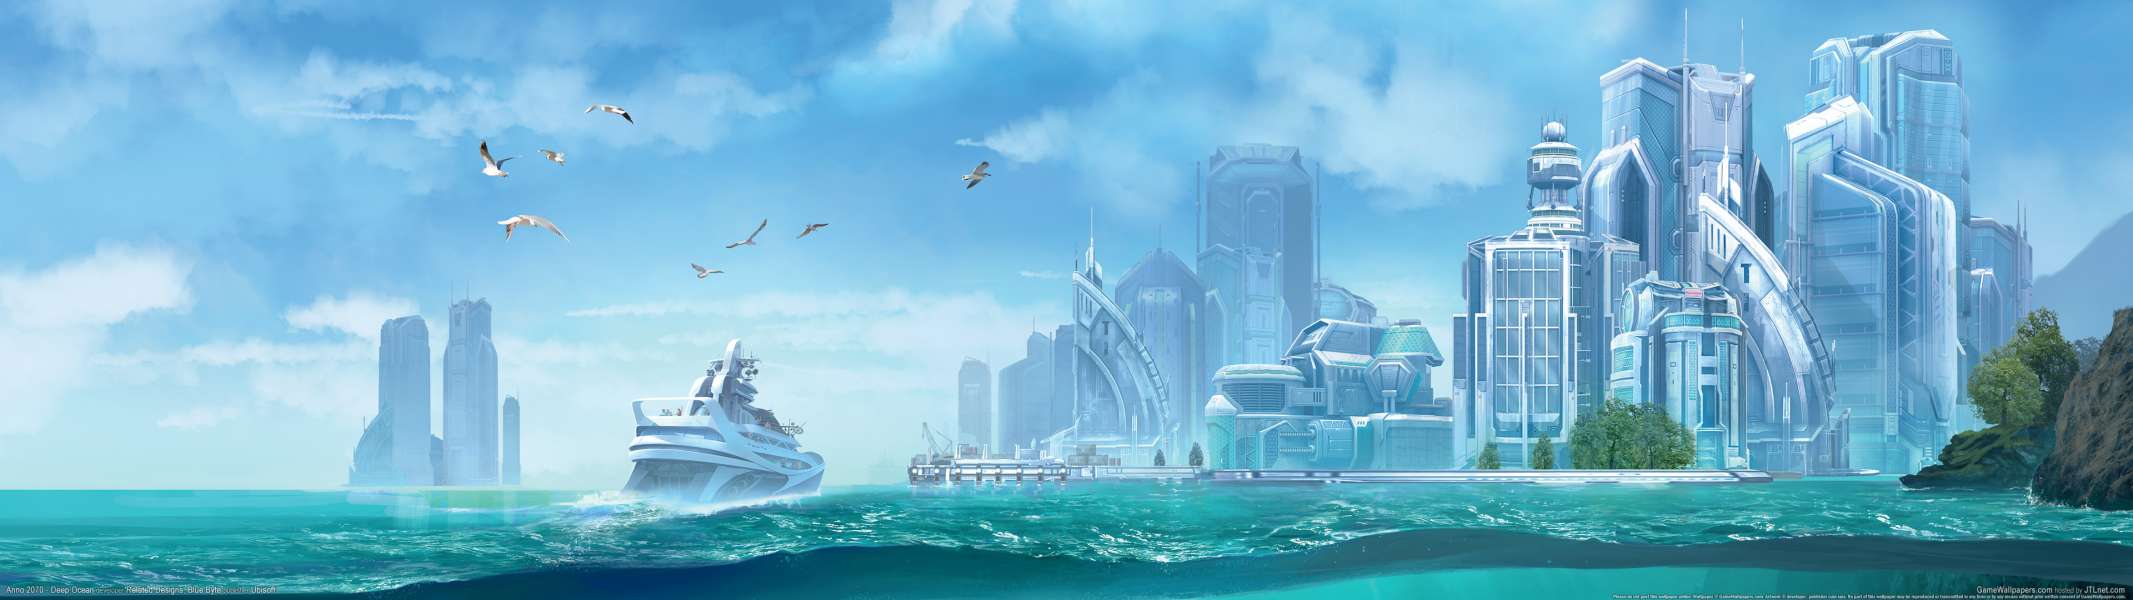 Anno 2070 - Deep Ocean dual screen fond d'cran